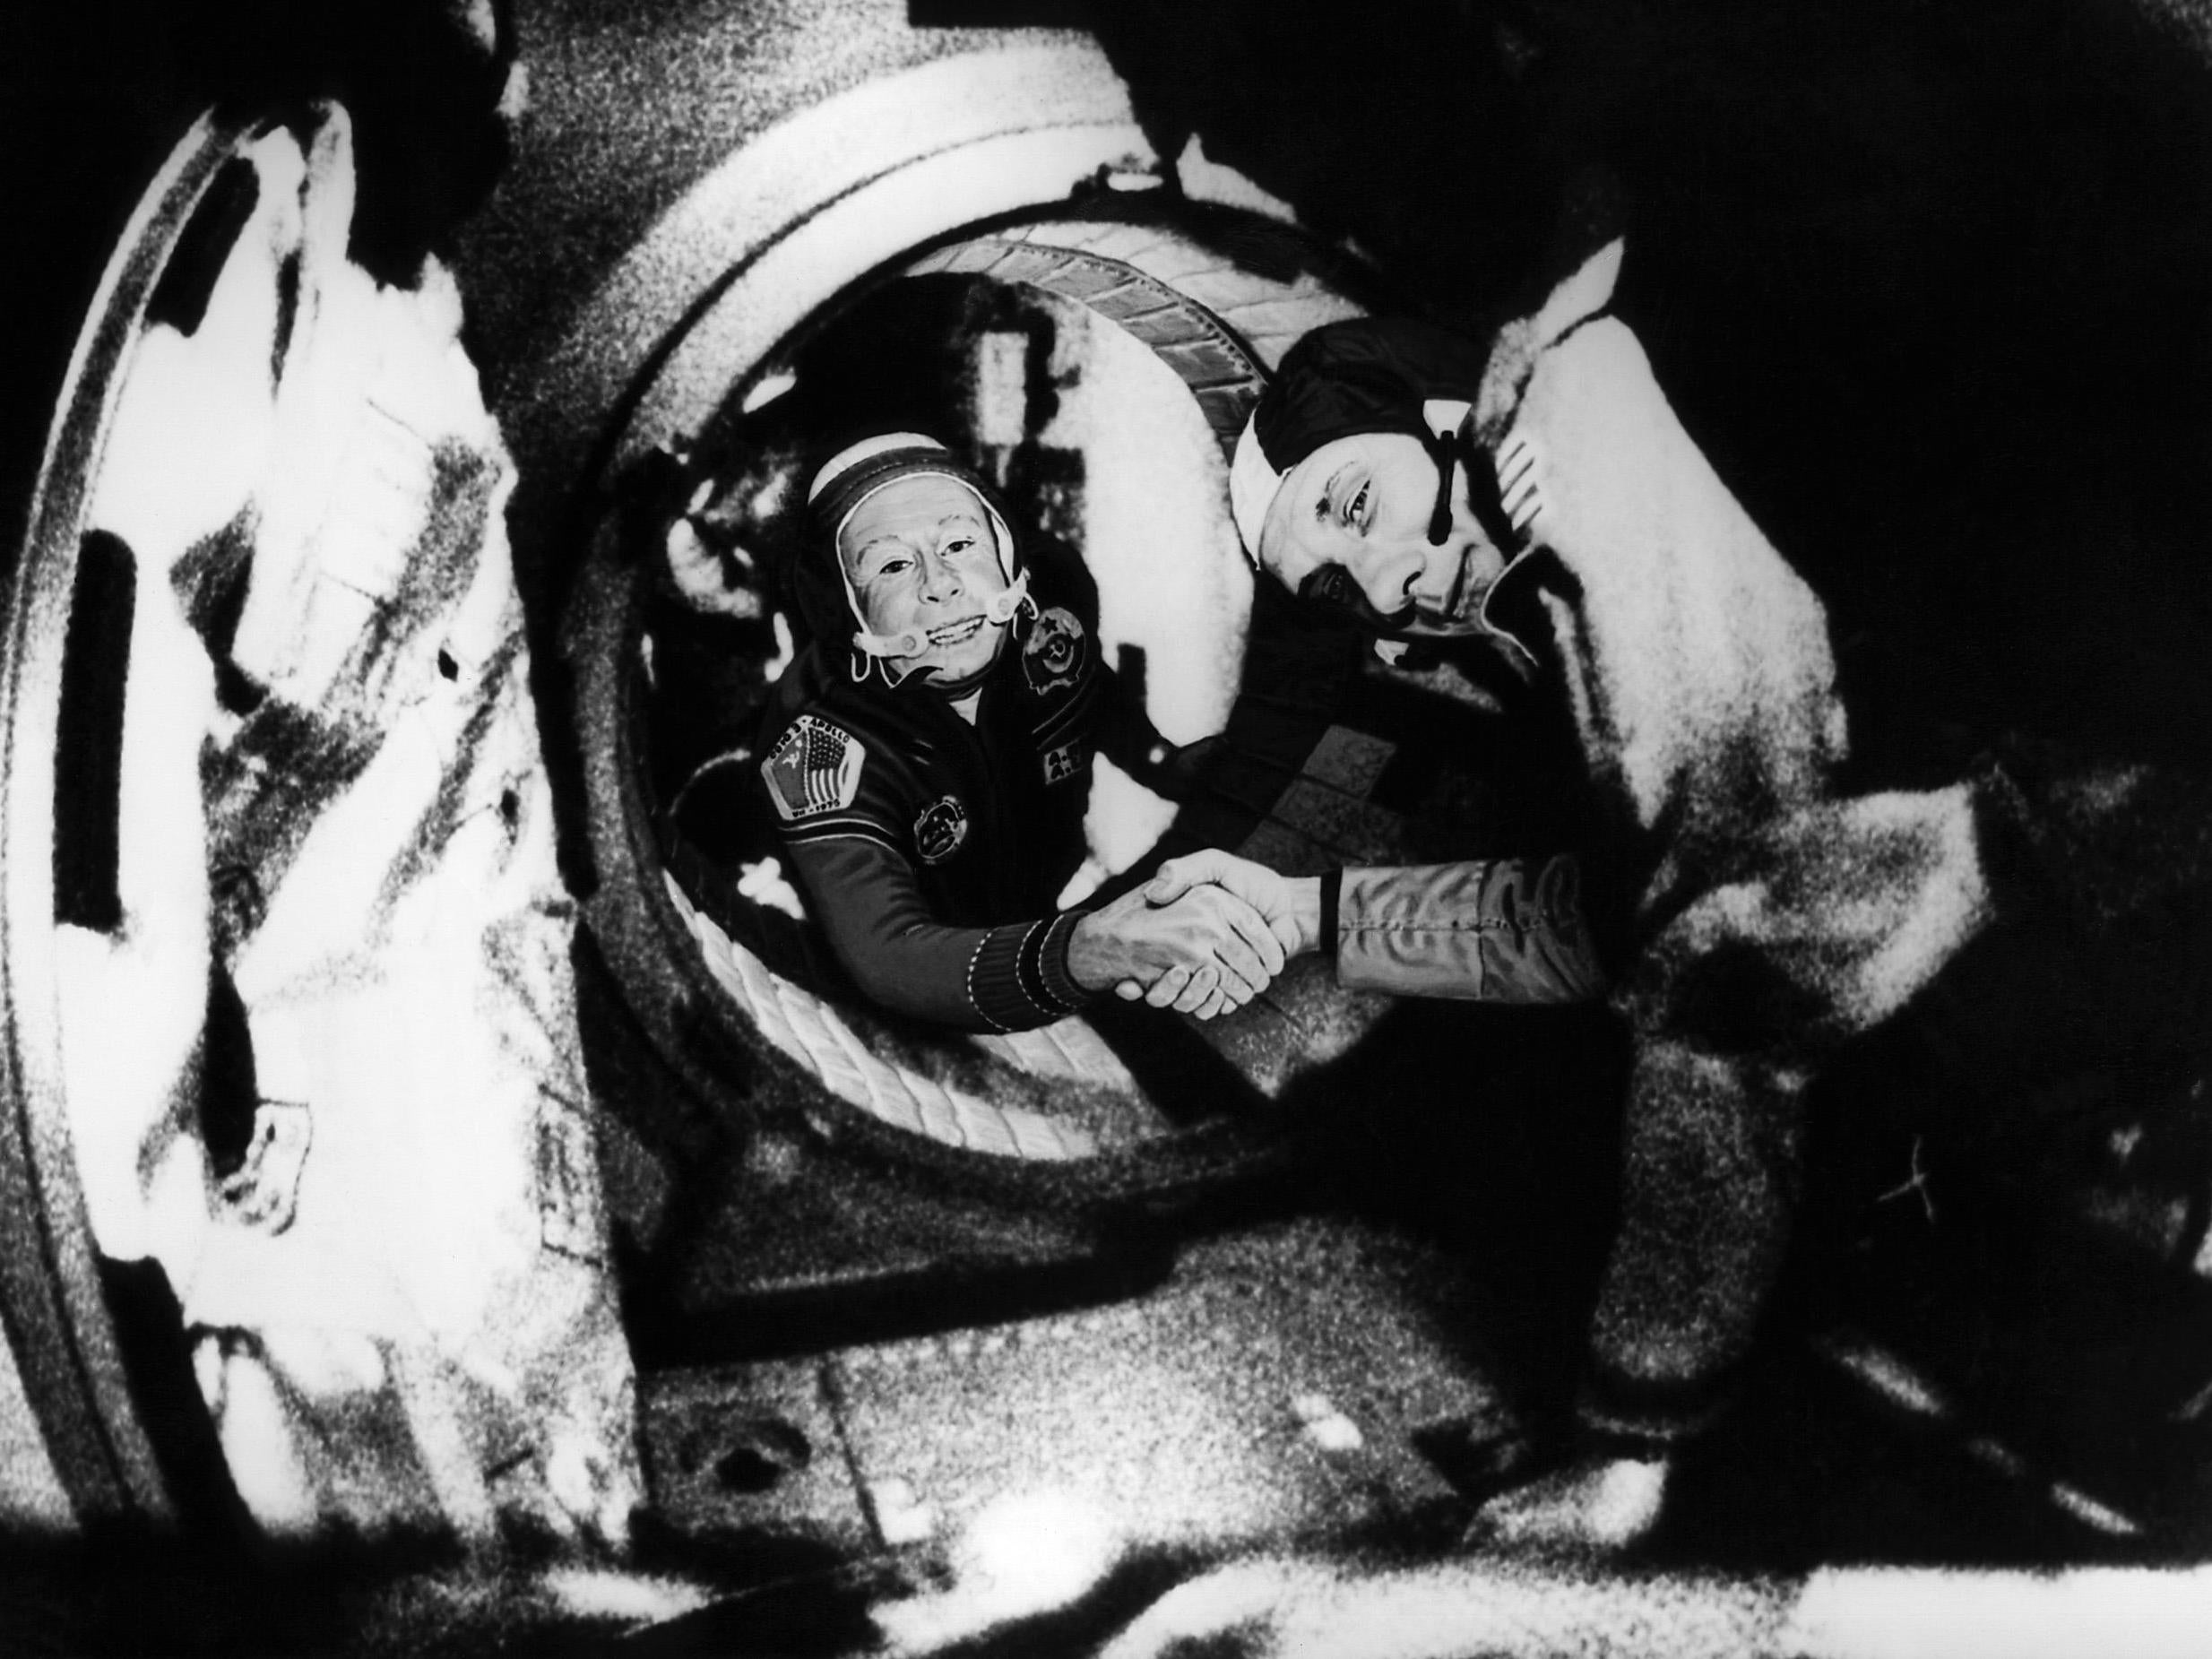 17 июля 1975 года. Союз Аполлон Леонов Стаффорд. Союз Аполлон экипаж Союз-Аполлон 1975.